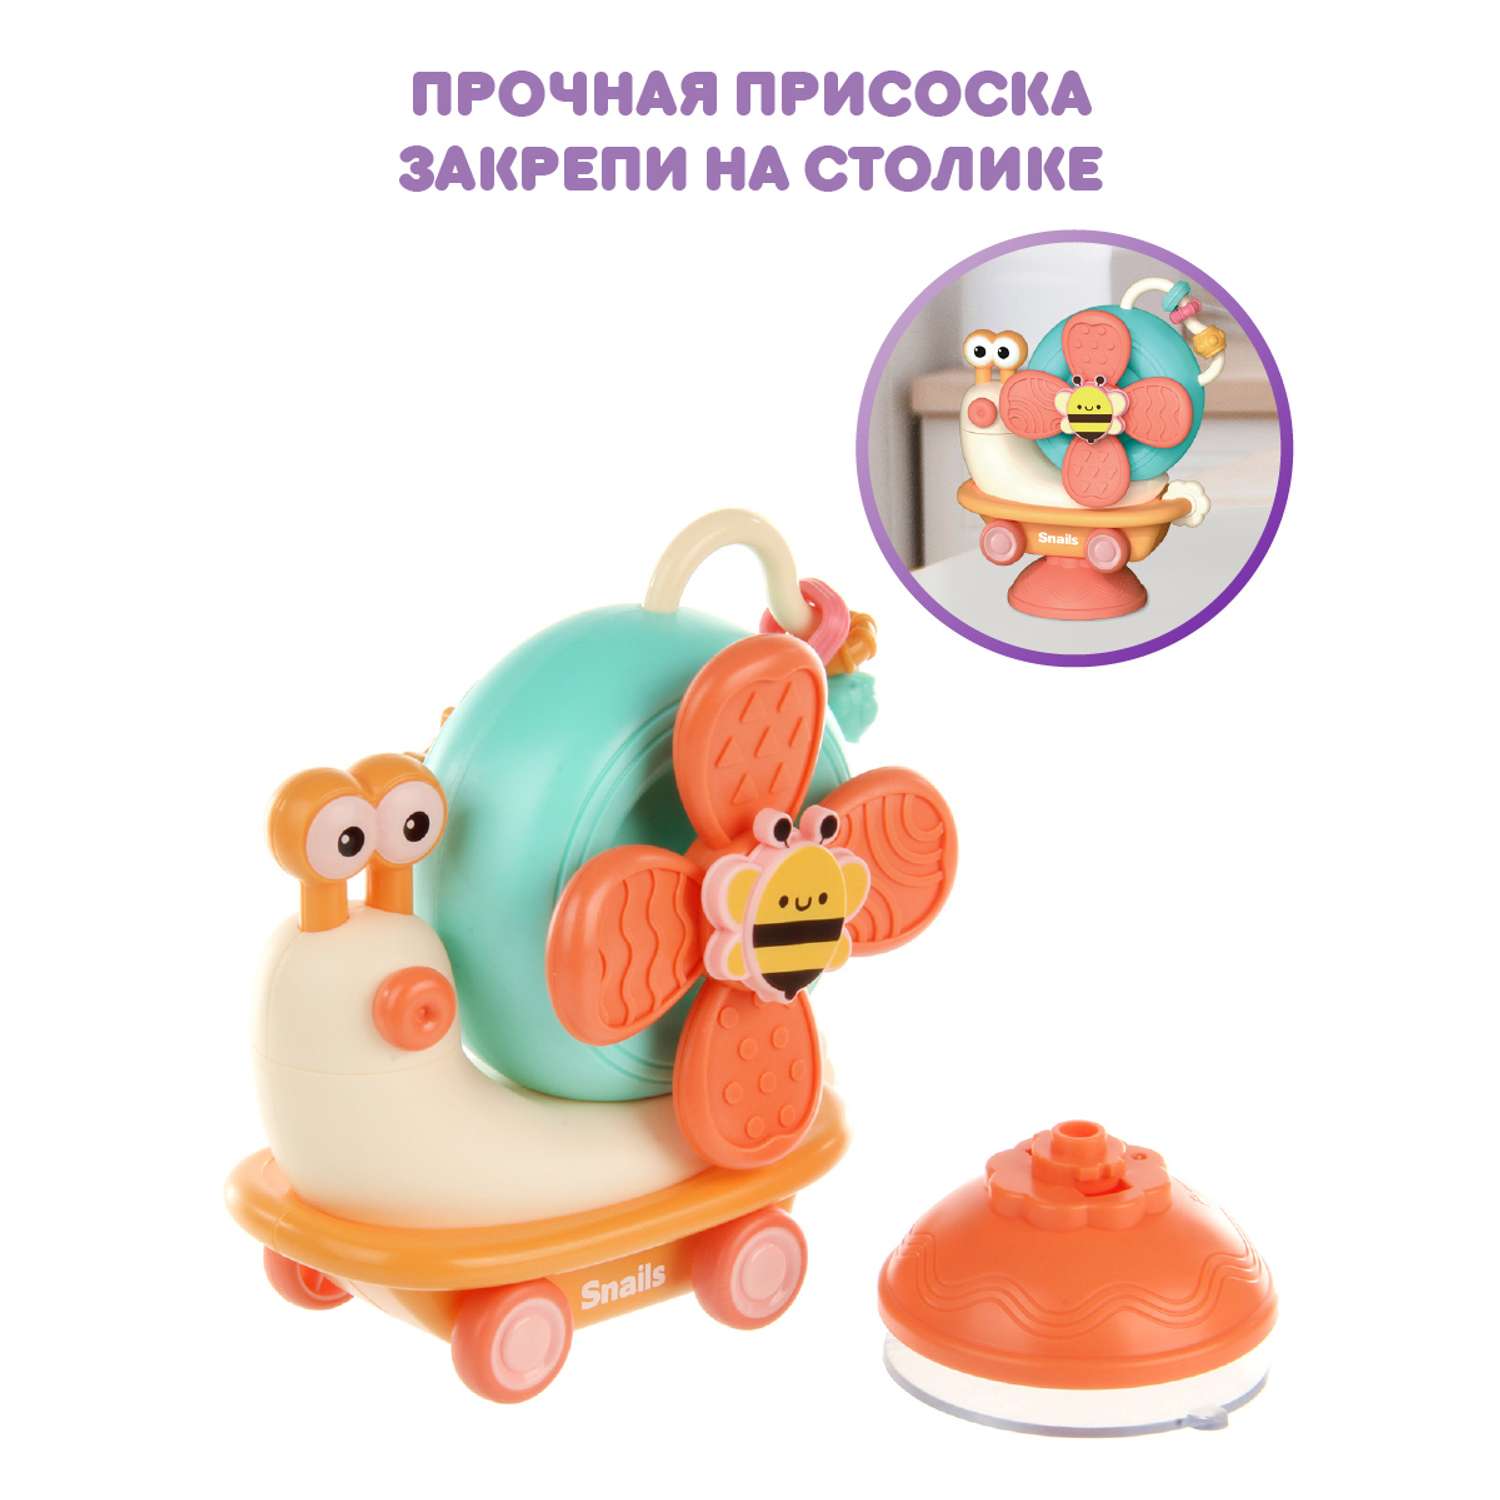 Развивающая игрушка Ути Пути 2 в 1 спиннер и покатушка на присоске Мистер Улитка - фото 3